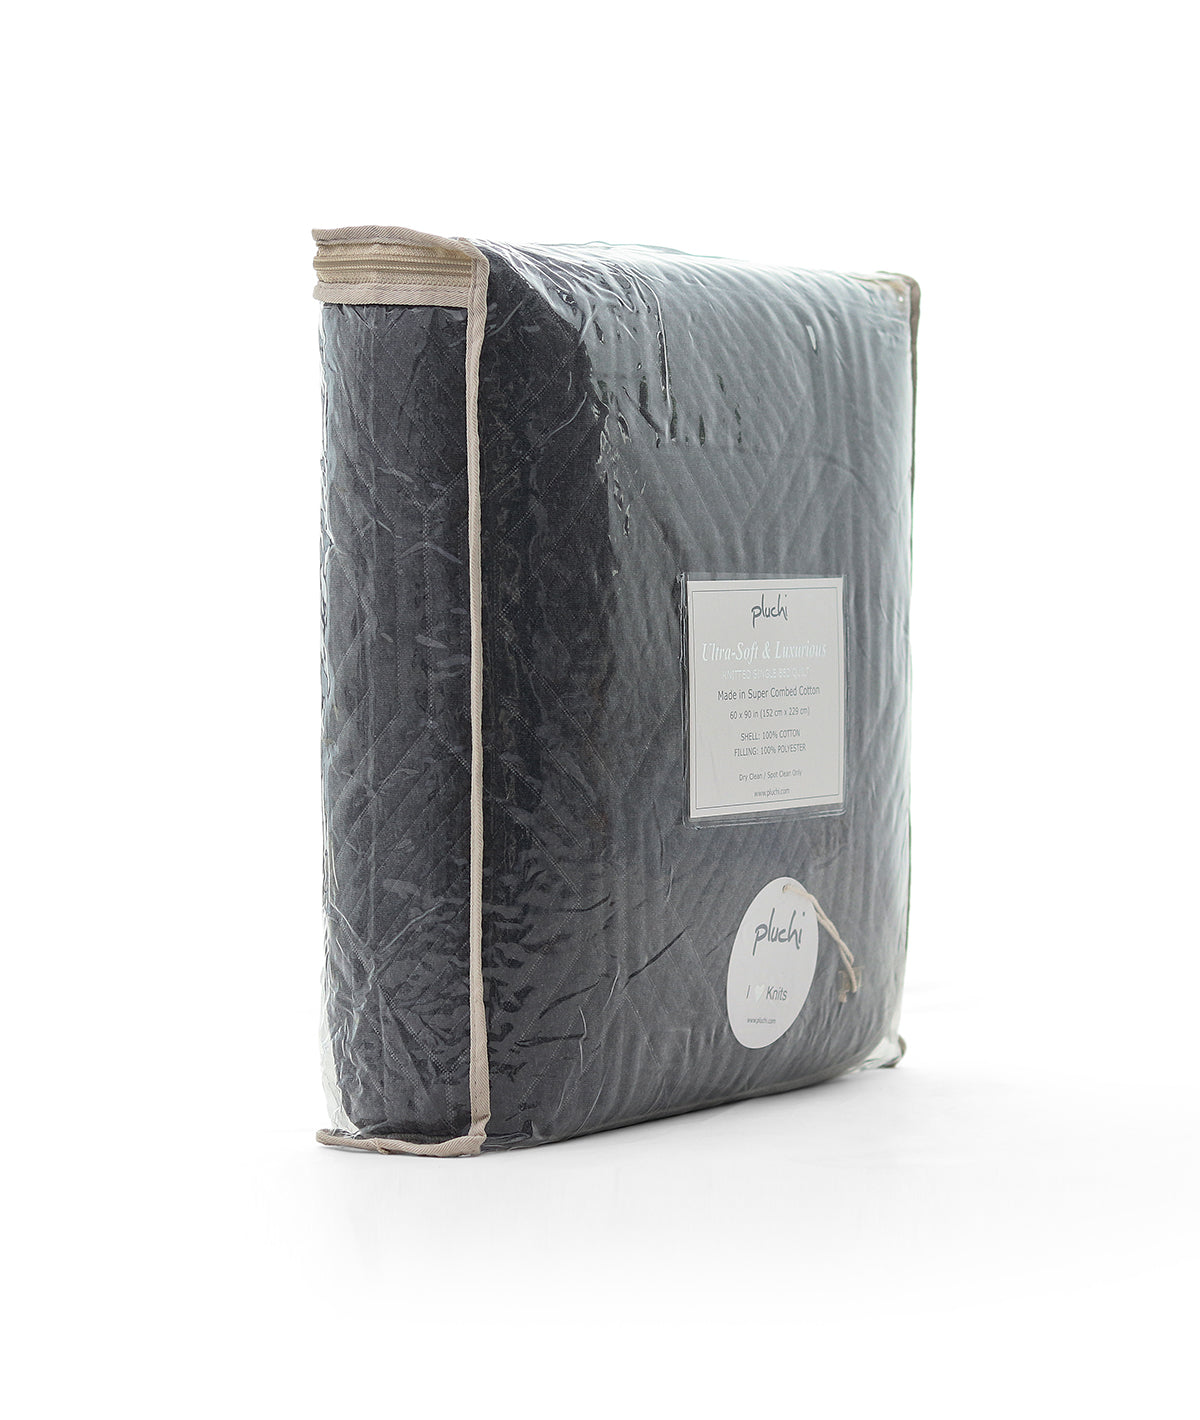 Arthur Single Bed Quilted Blanket (Dark Grey Melange & Light Grey Melange)(152cm x 228cm)